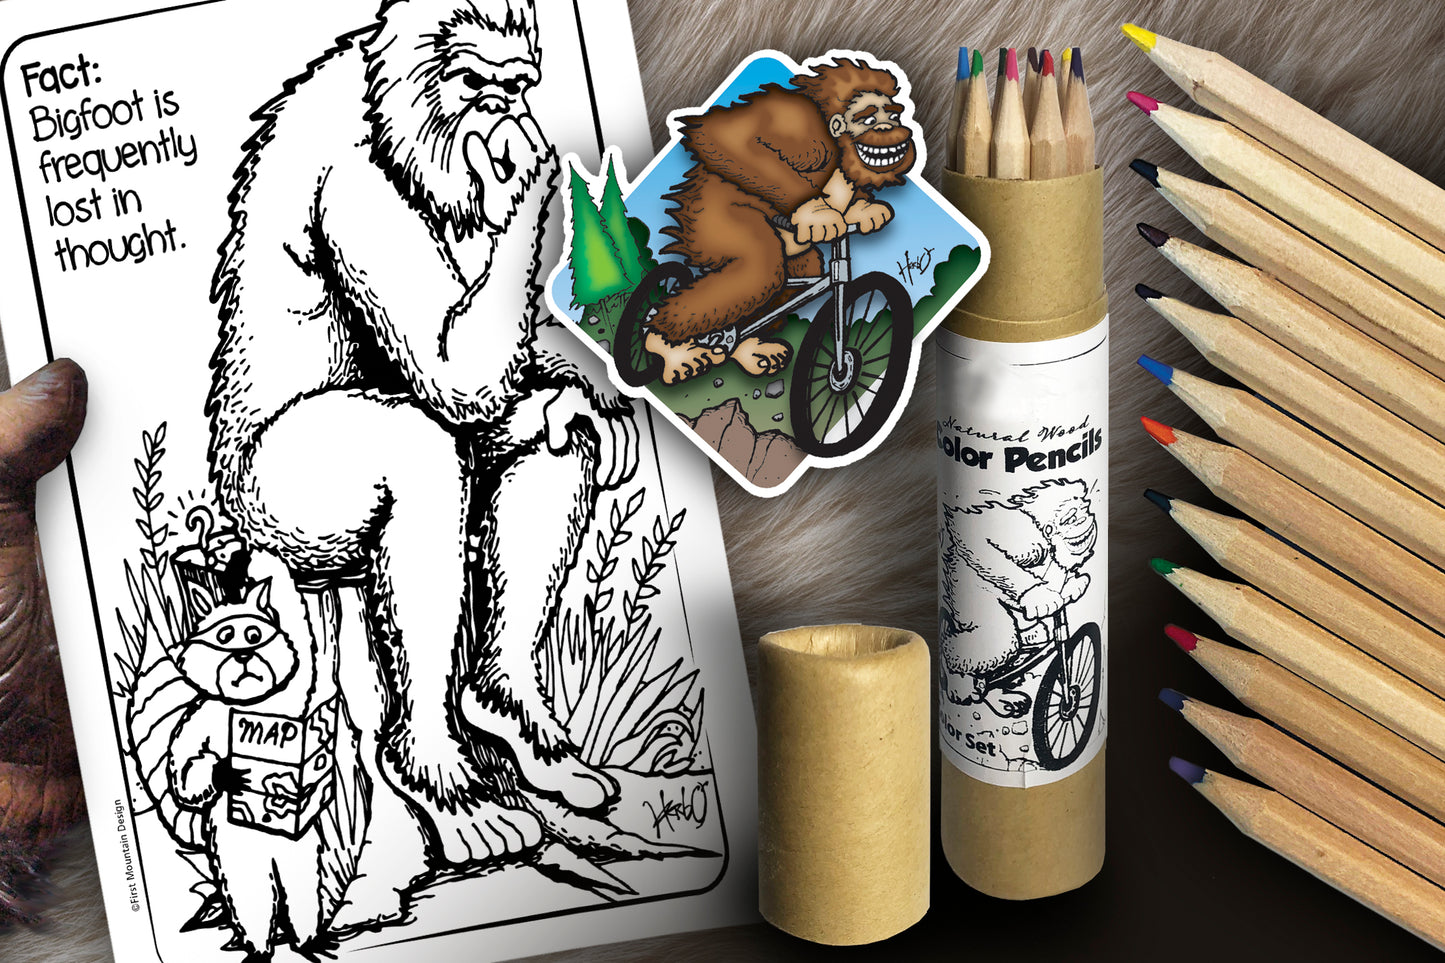 Bigfoot Coloring Book